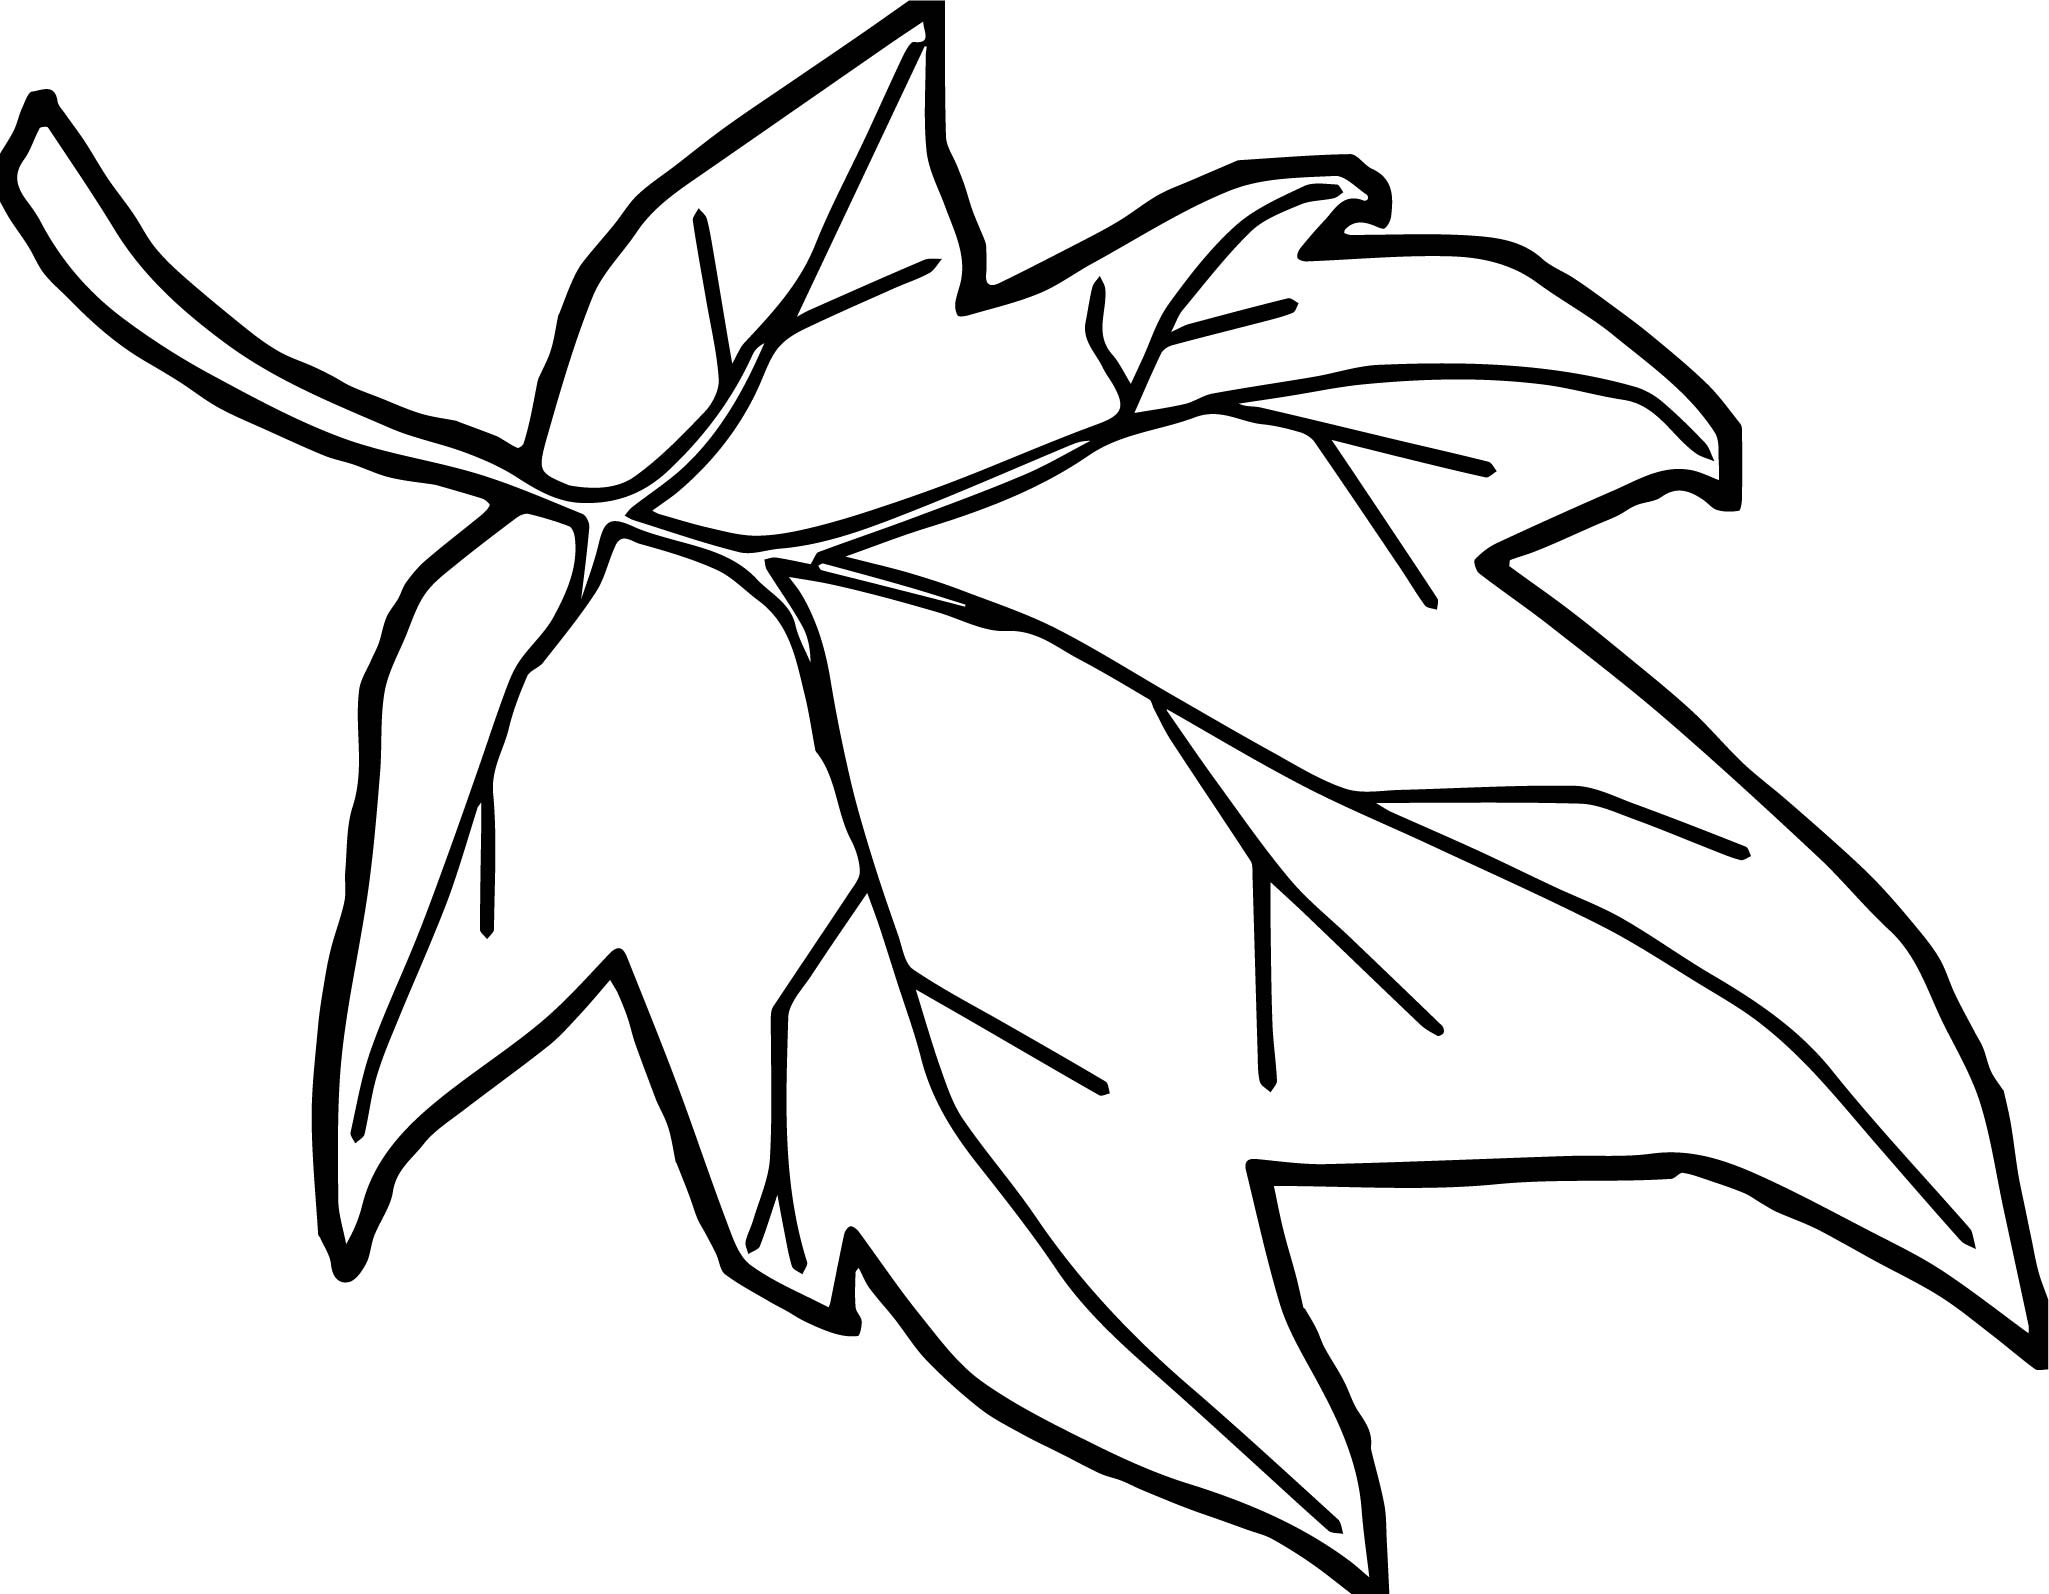 Leaf Cartoon Drawing at GetDrawings Free download